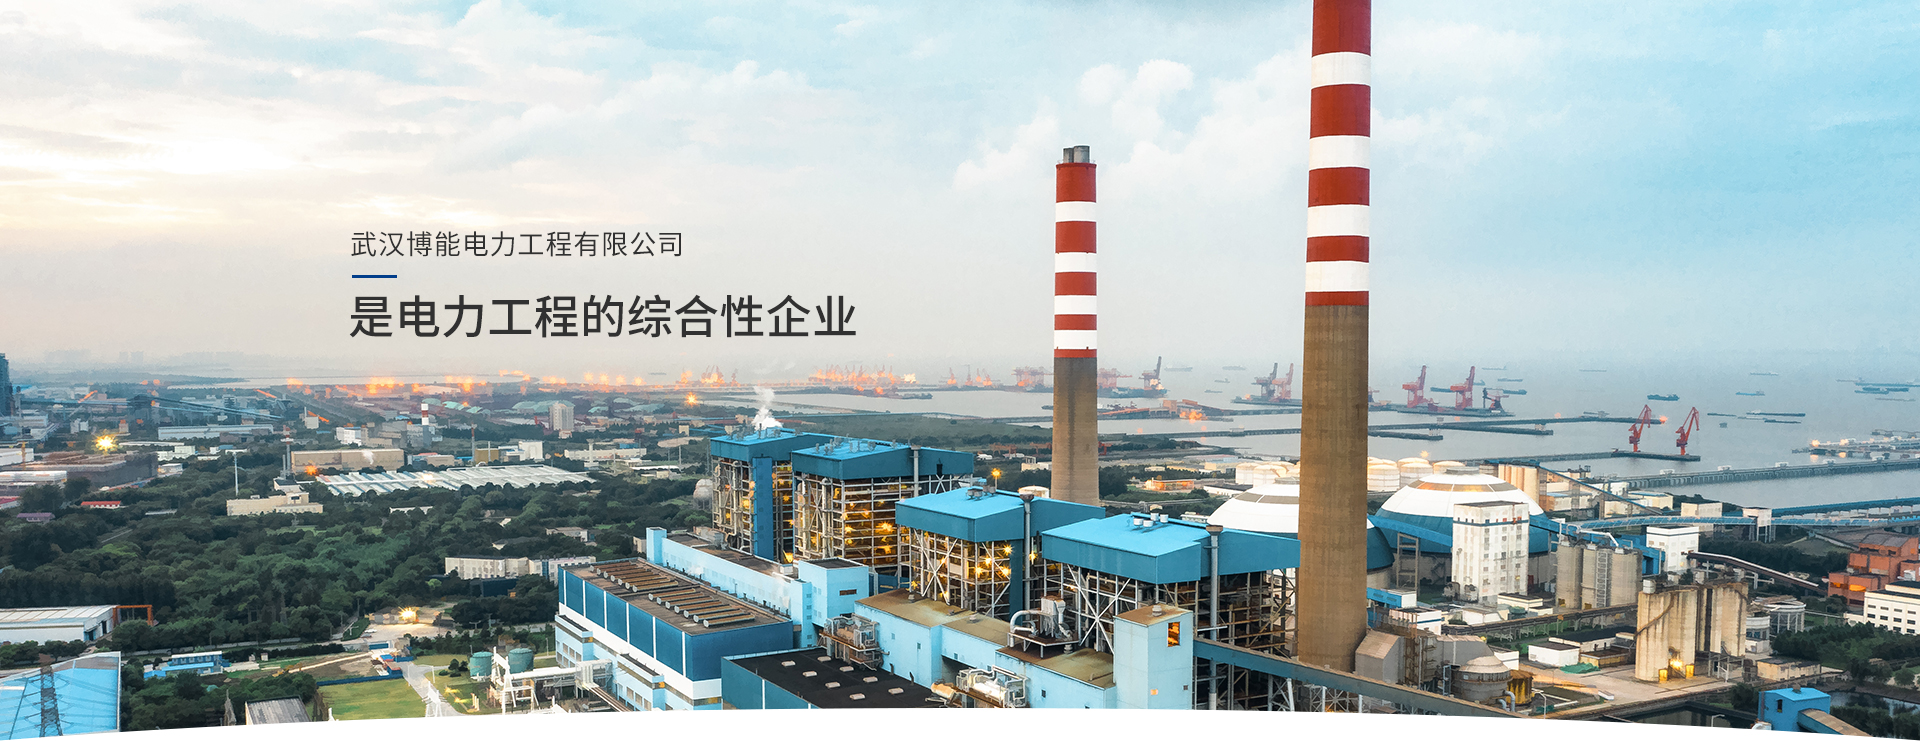 武漢博能電力工程有限公司